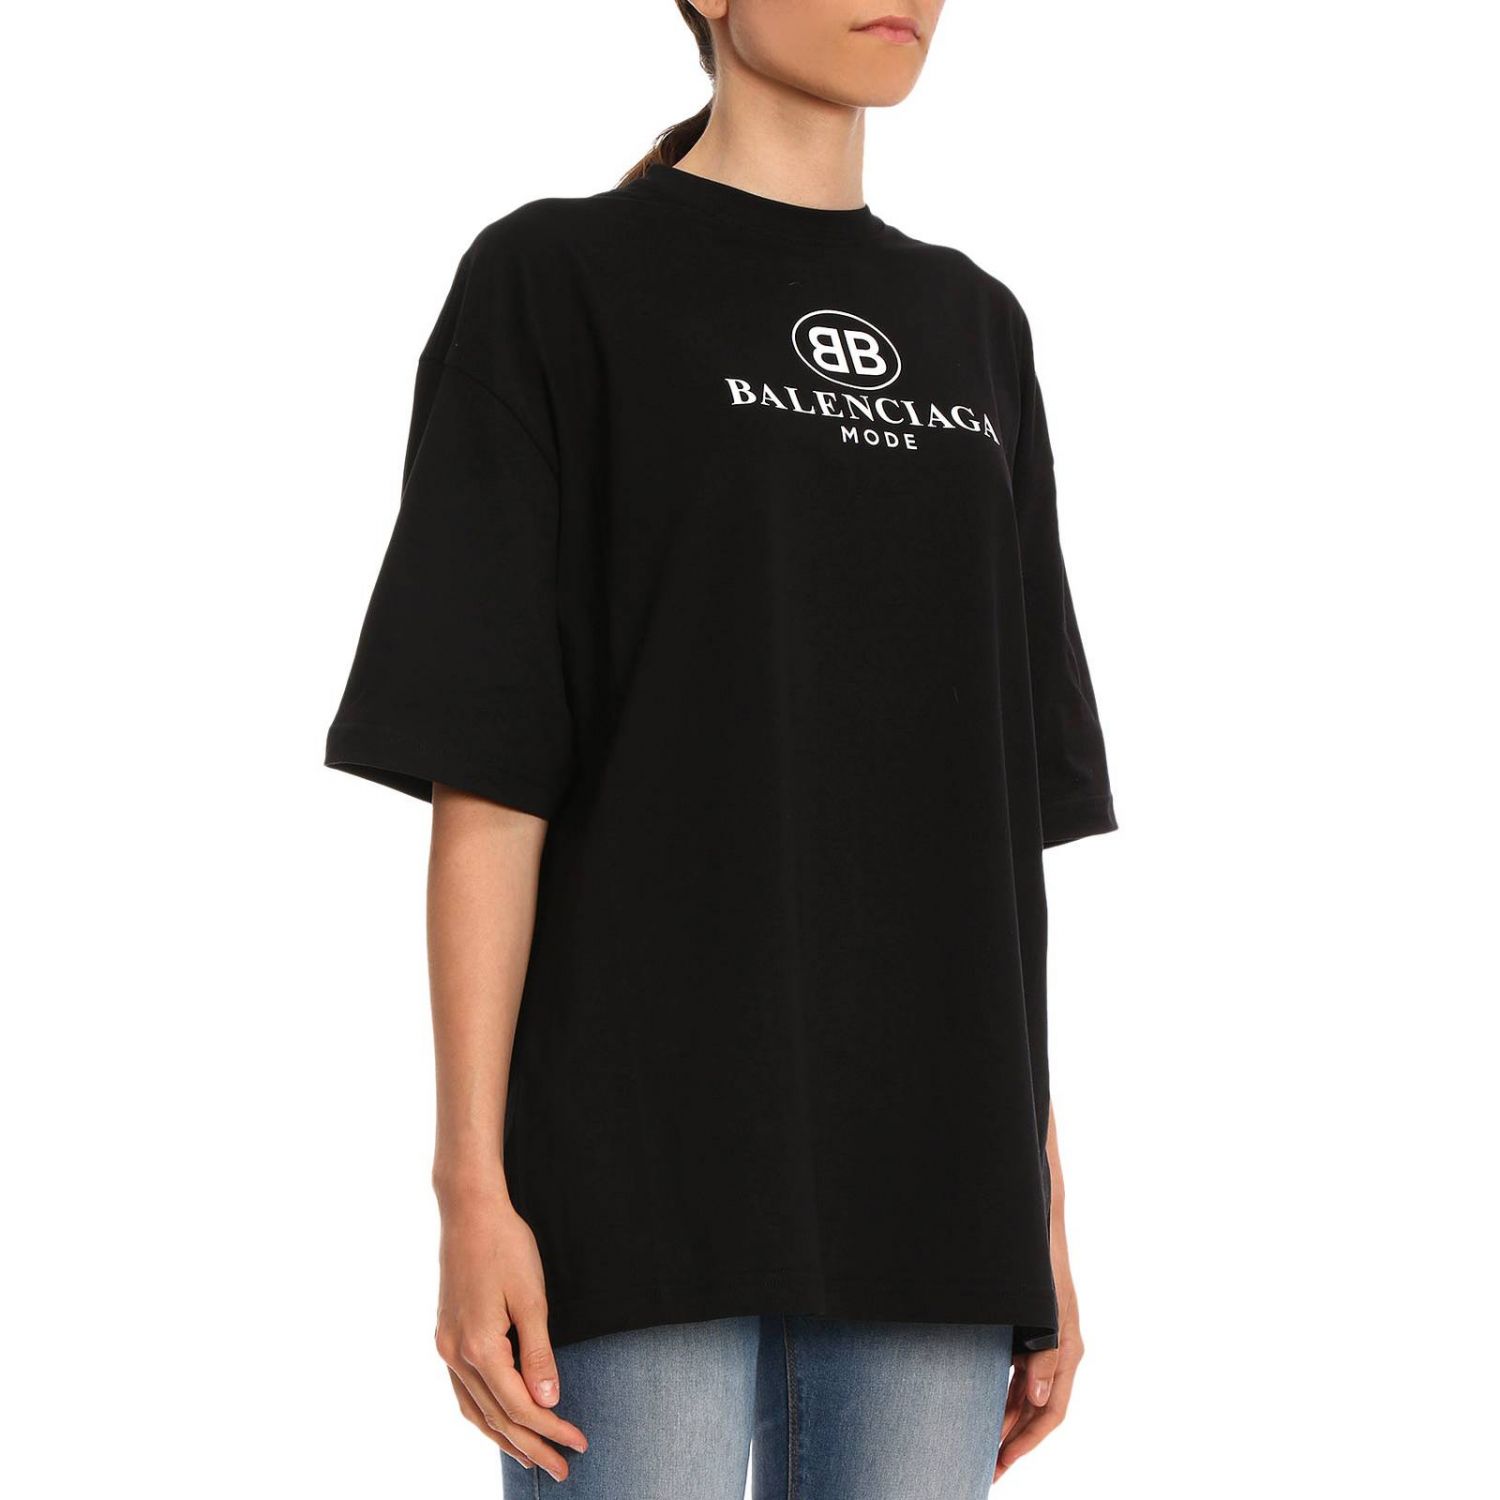 BALENCIAGA: T-shirt women | T-Shirt Balenciaga Women Black | T-Shirt ...